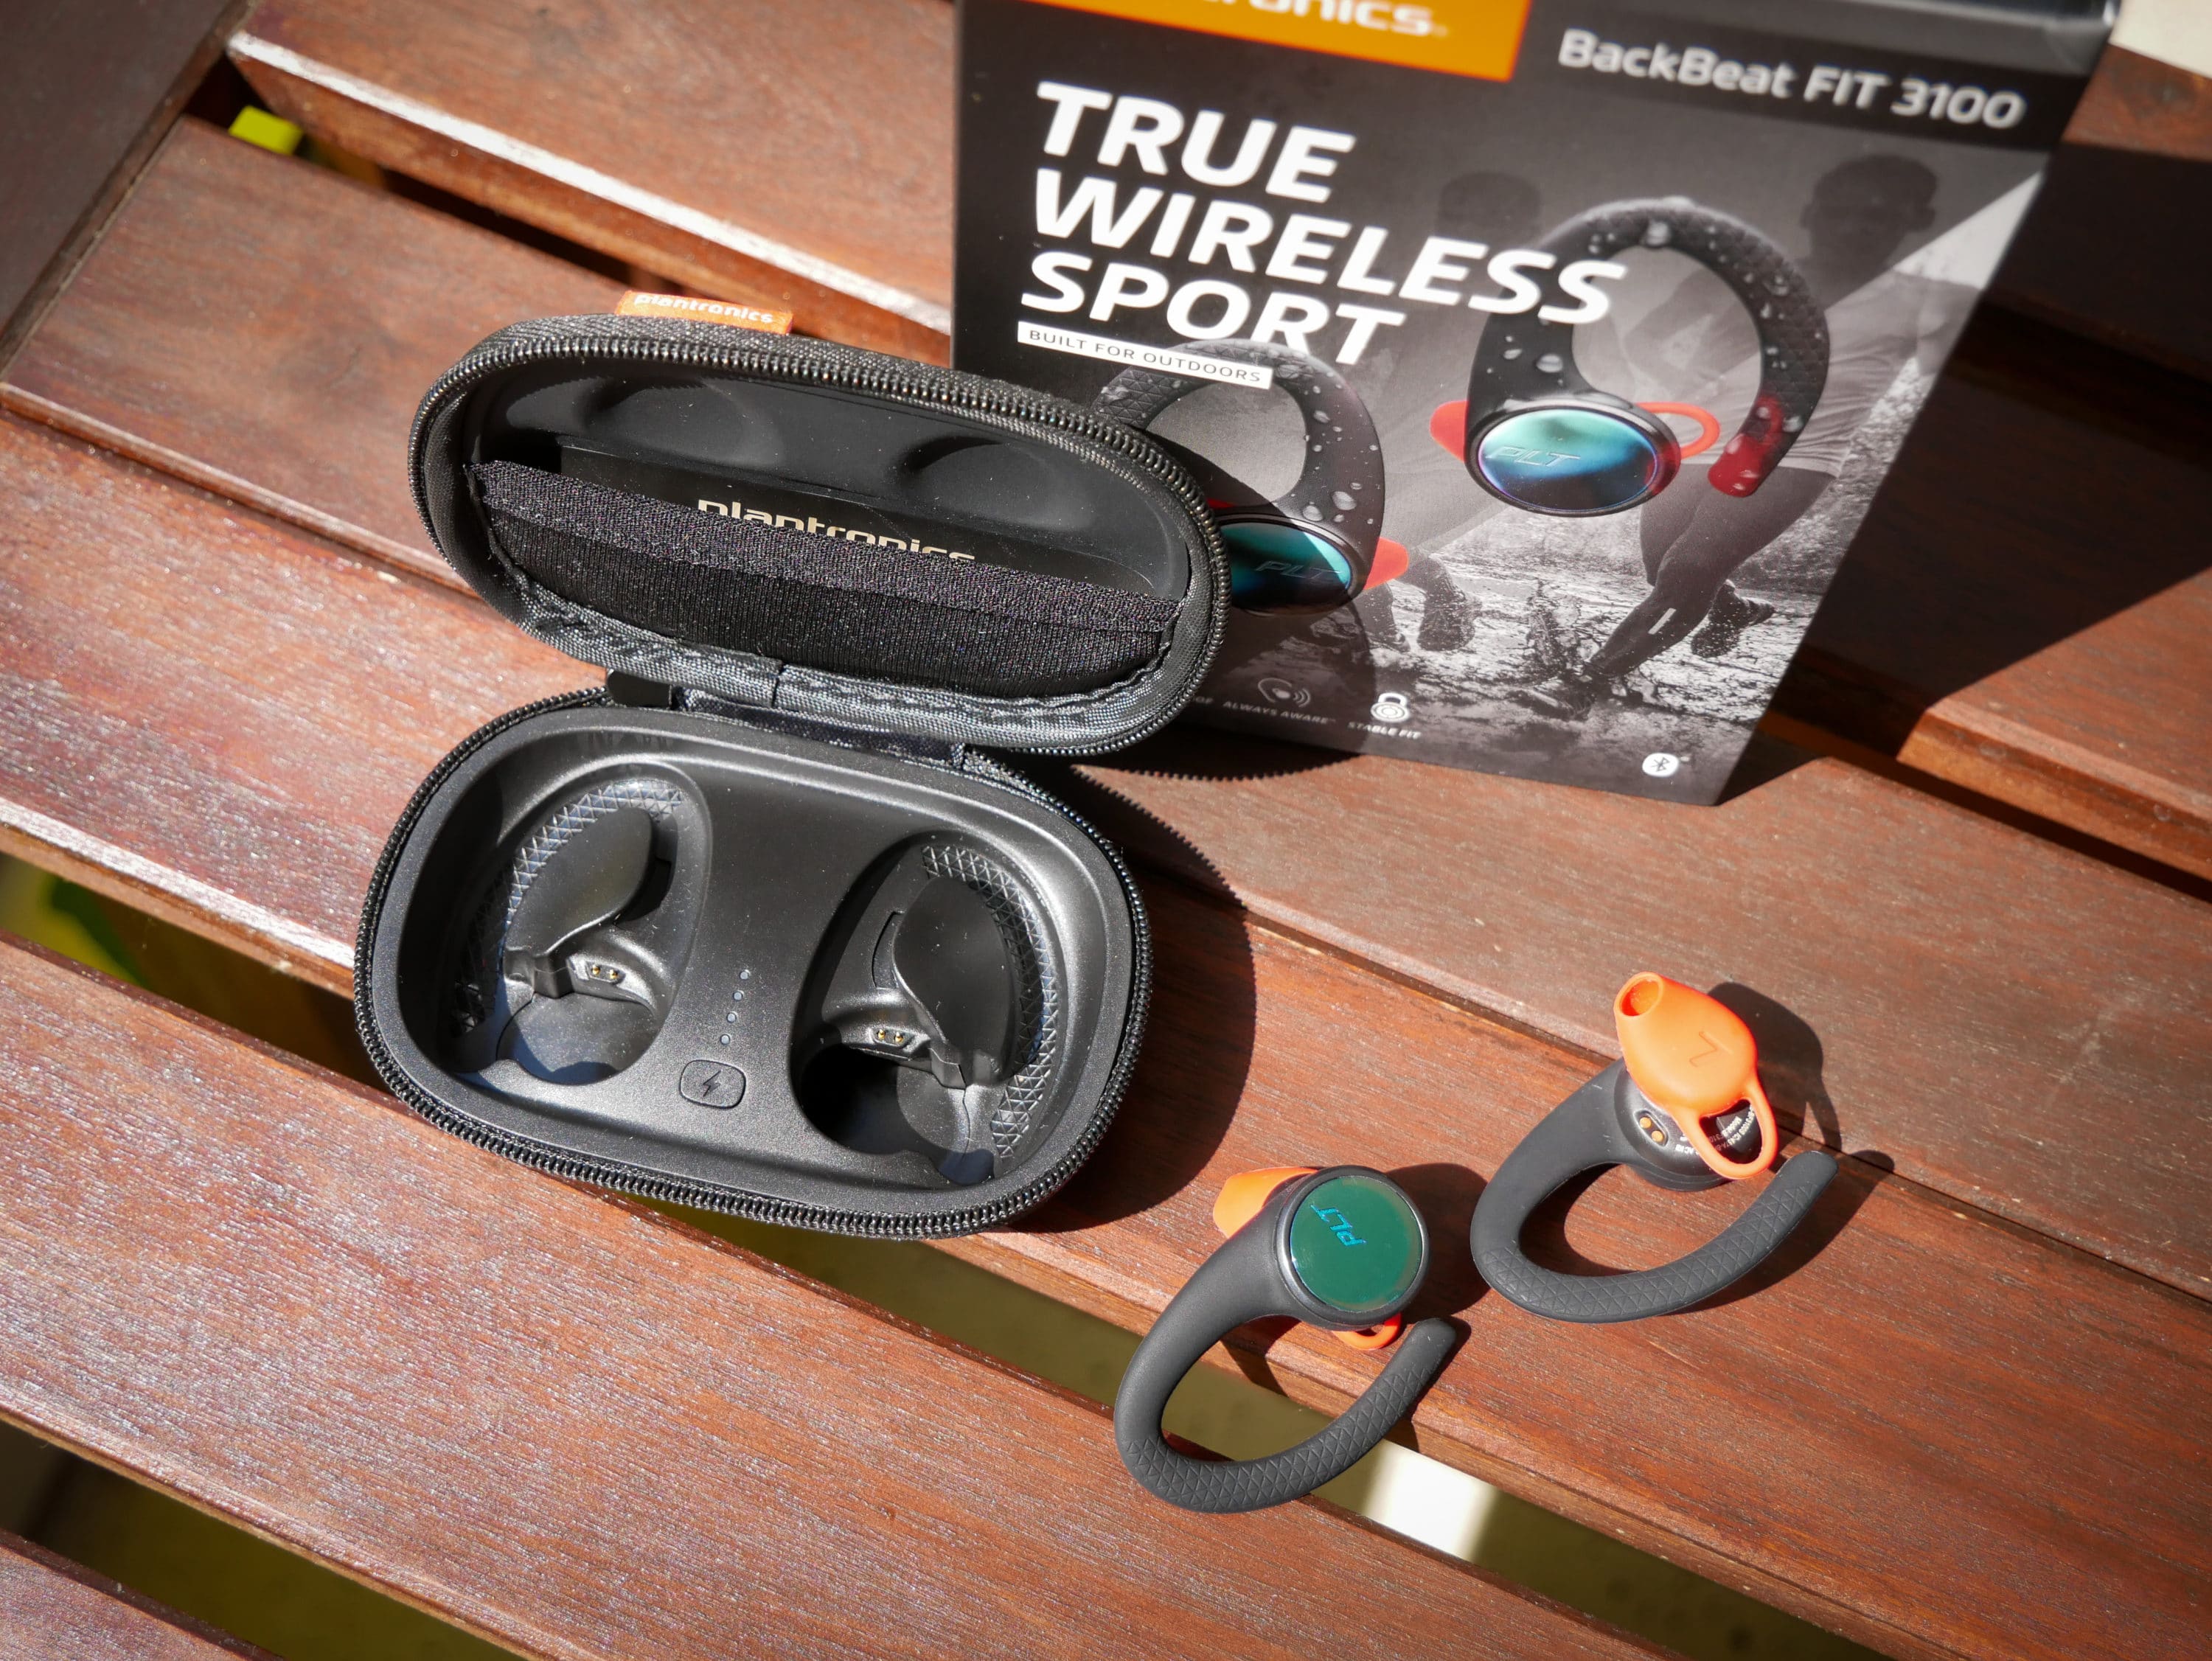 backbeat fit 3100 true wireless sport earbuds